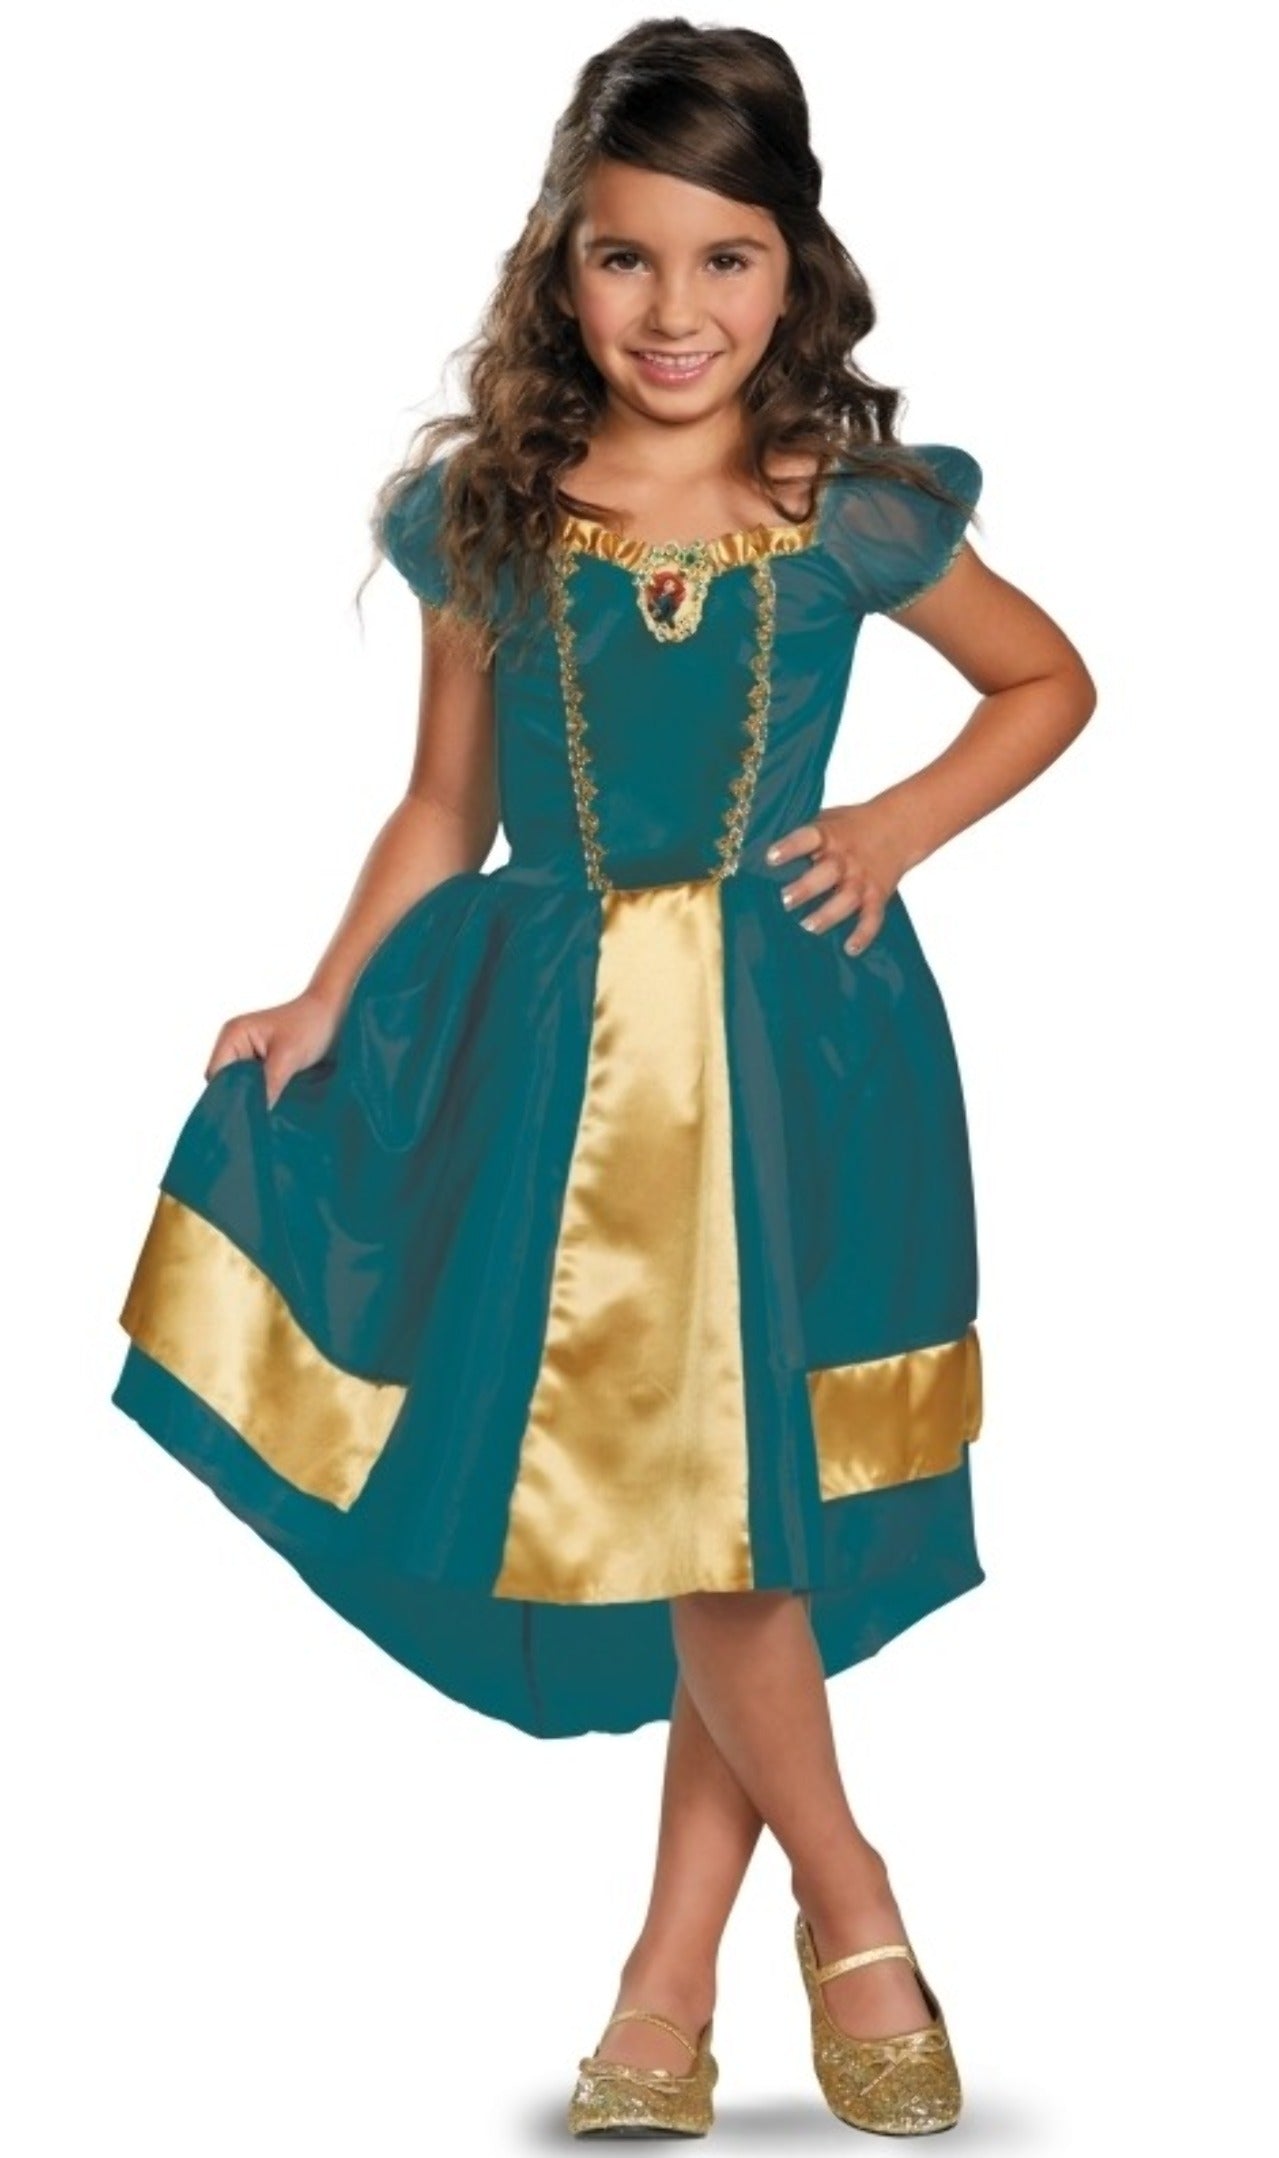 Acquista online il costume da Principessa Merida per bambina